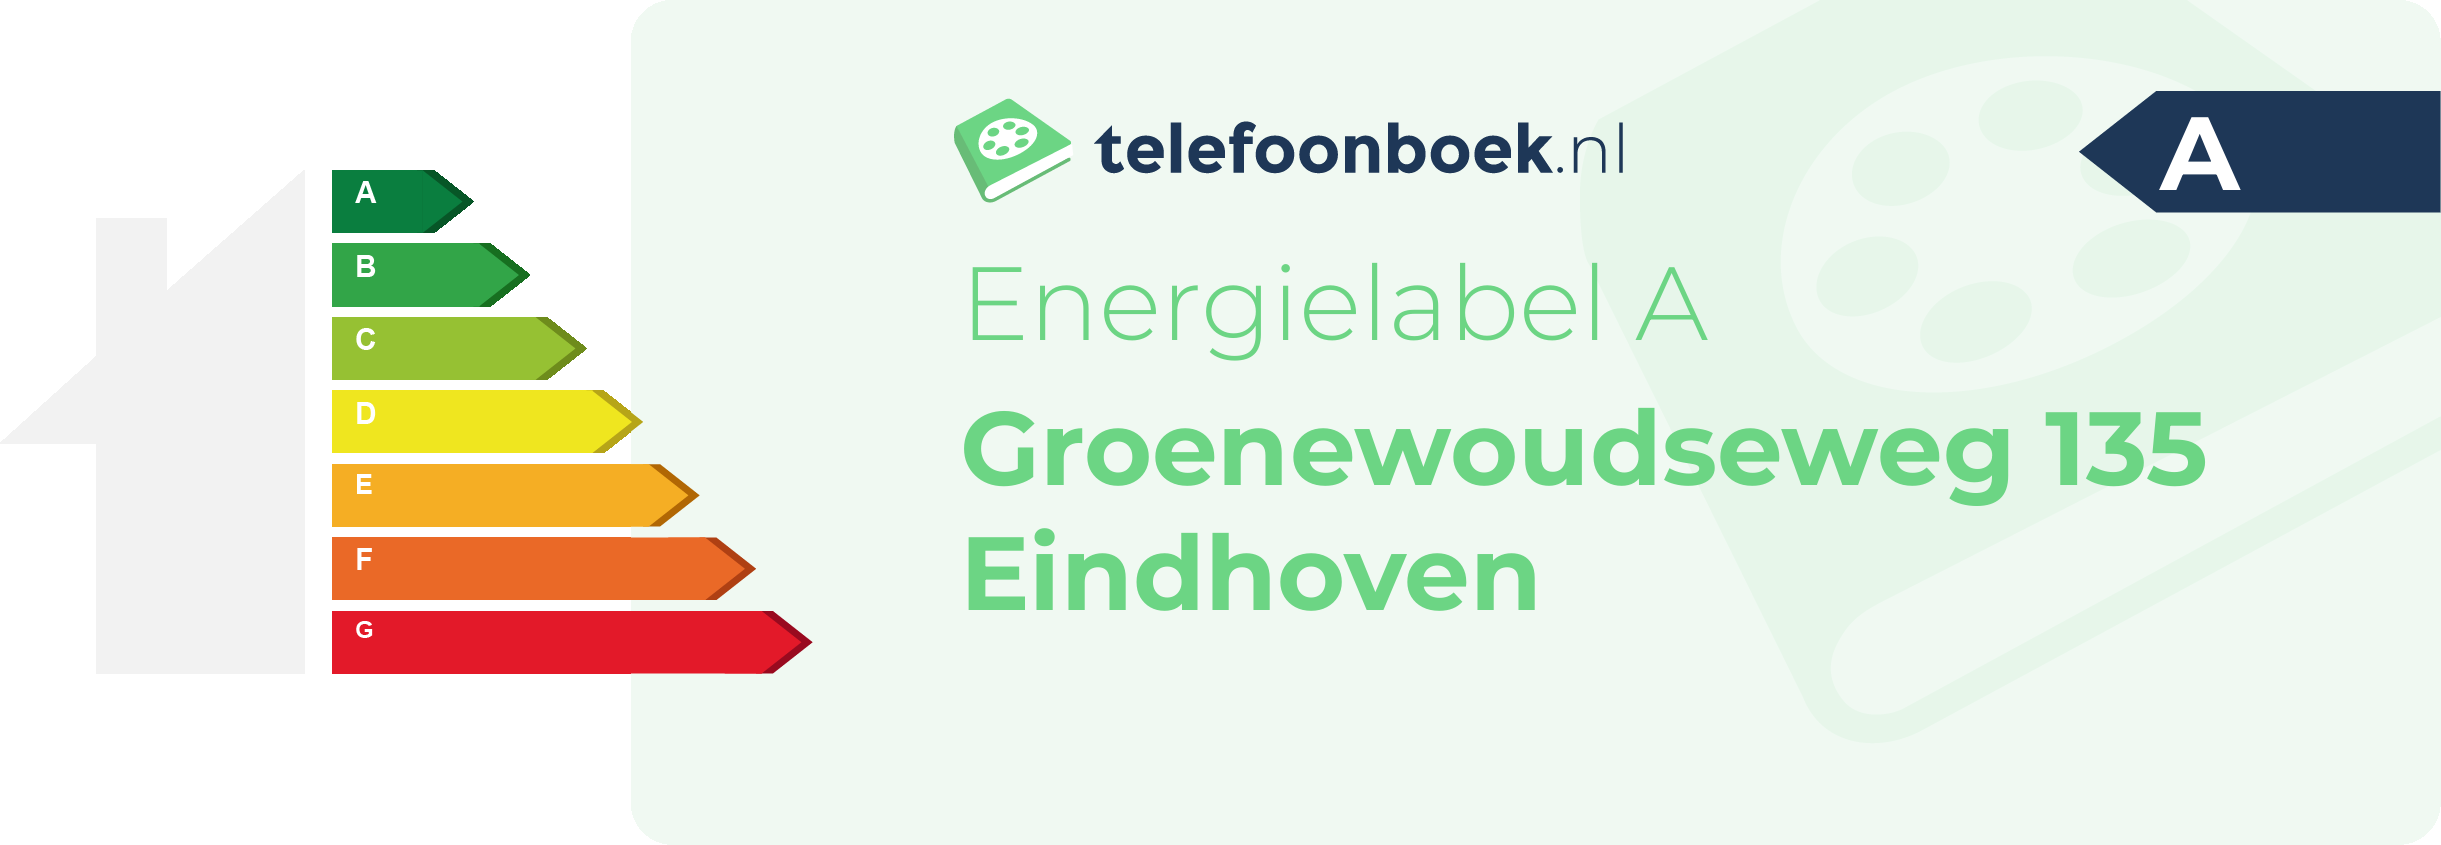 Energielabel Groenewoudseweg 135 Eindhoven